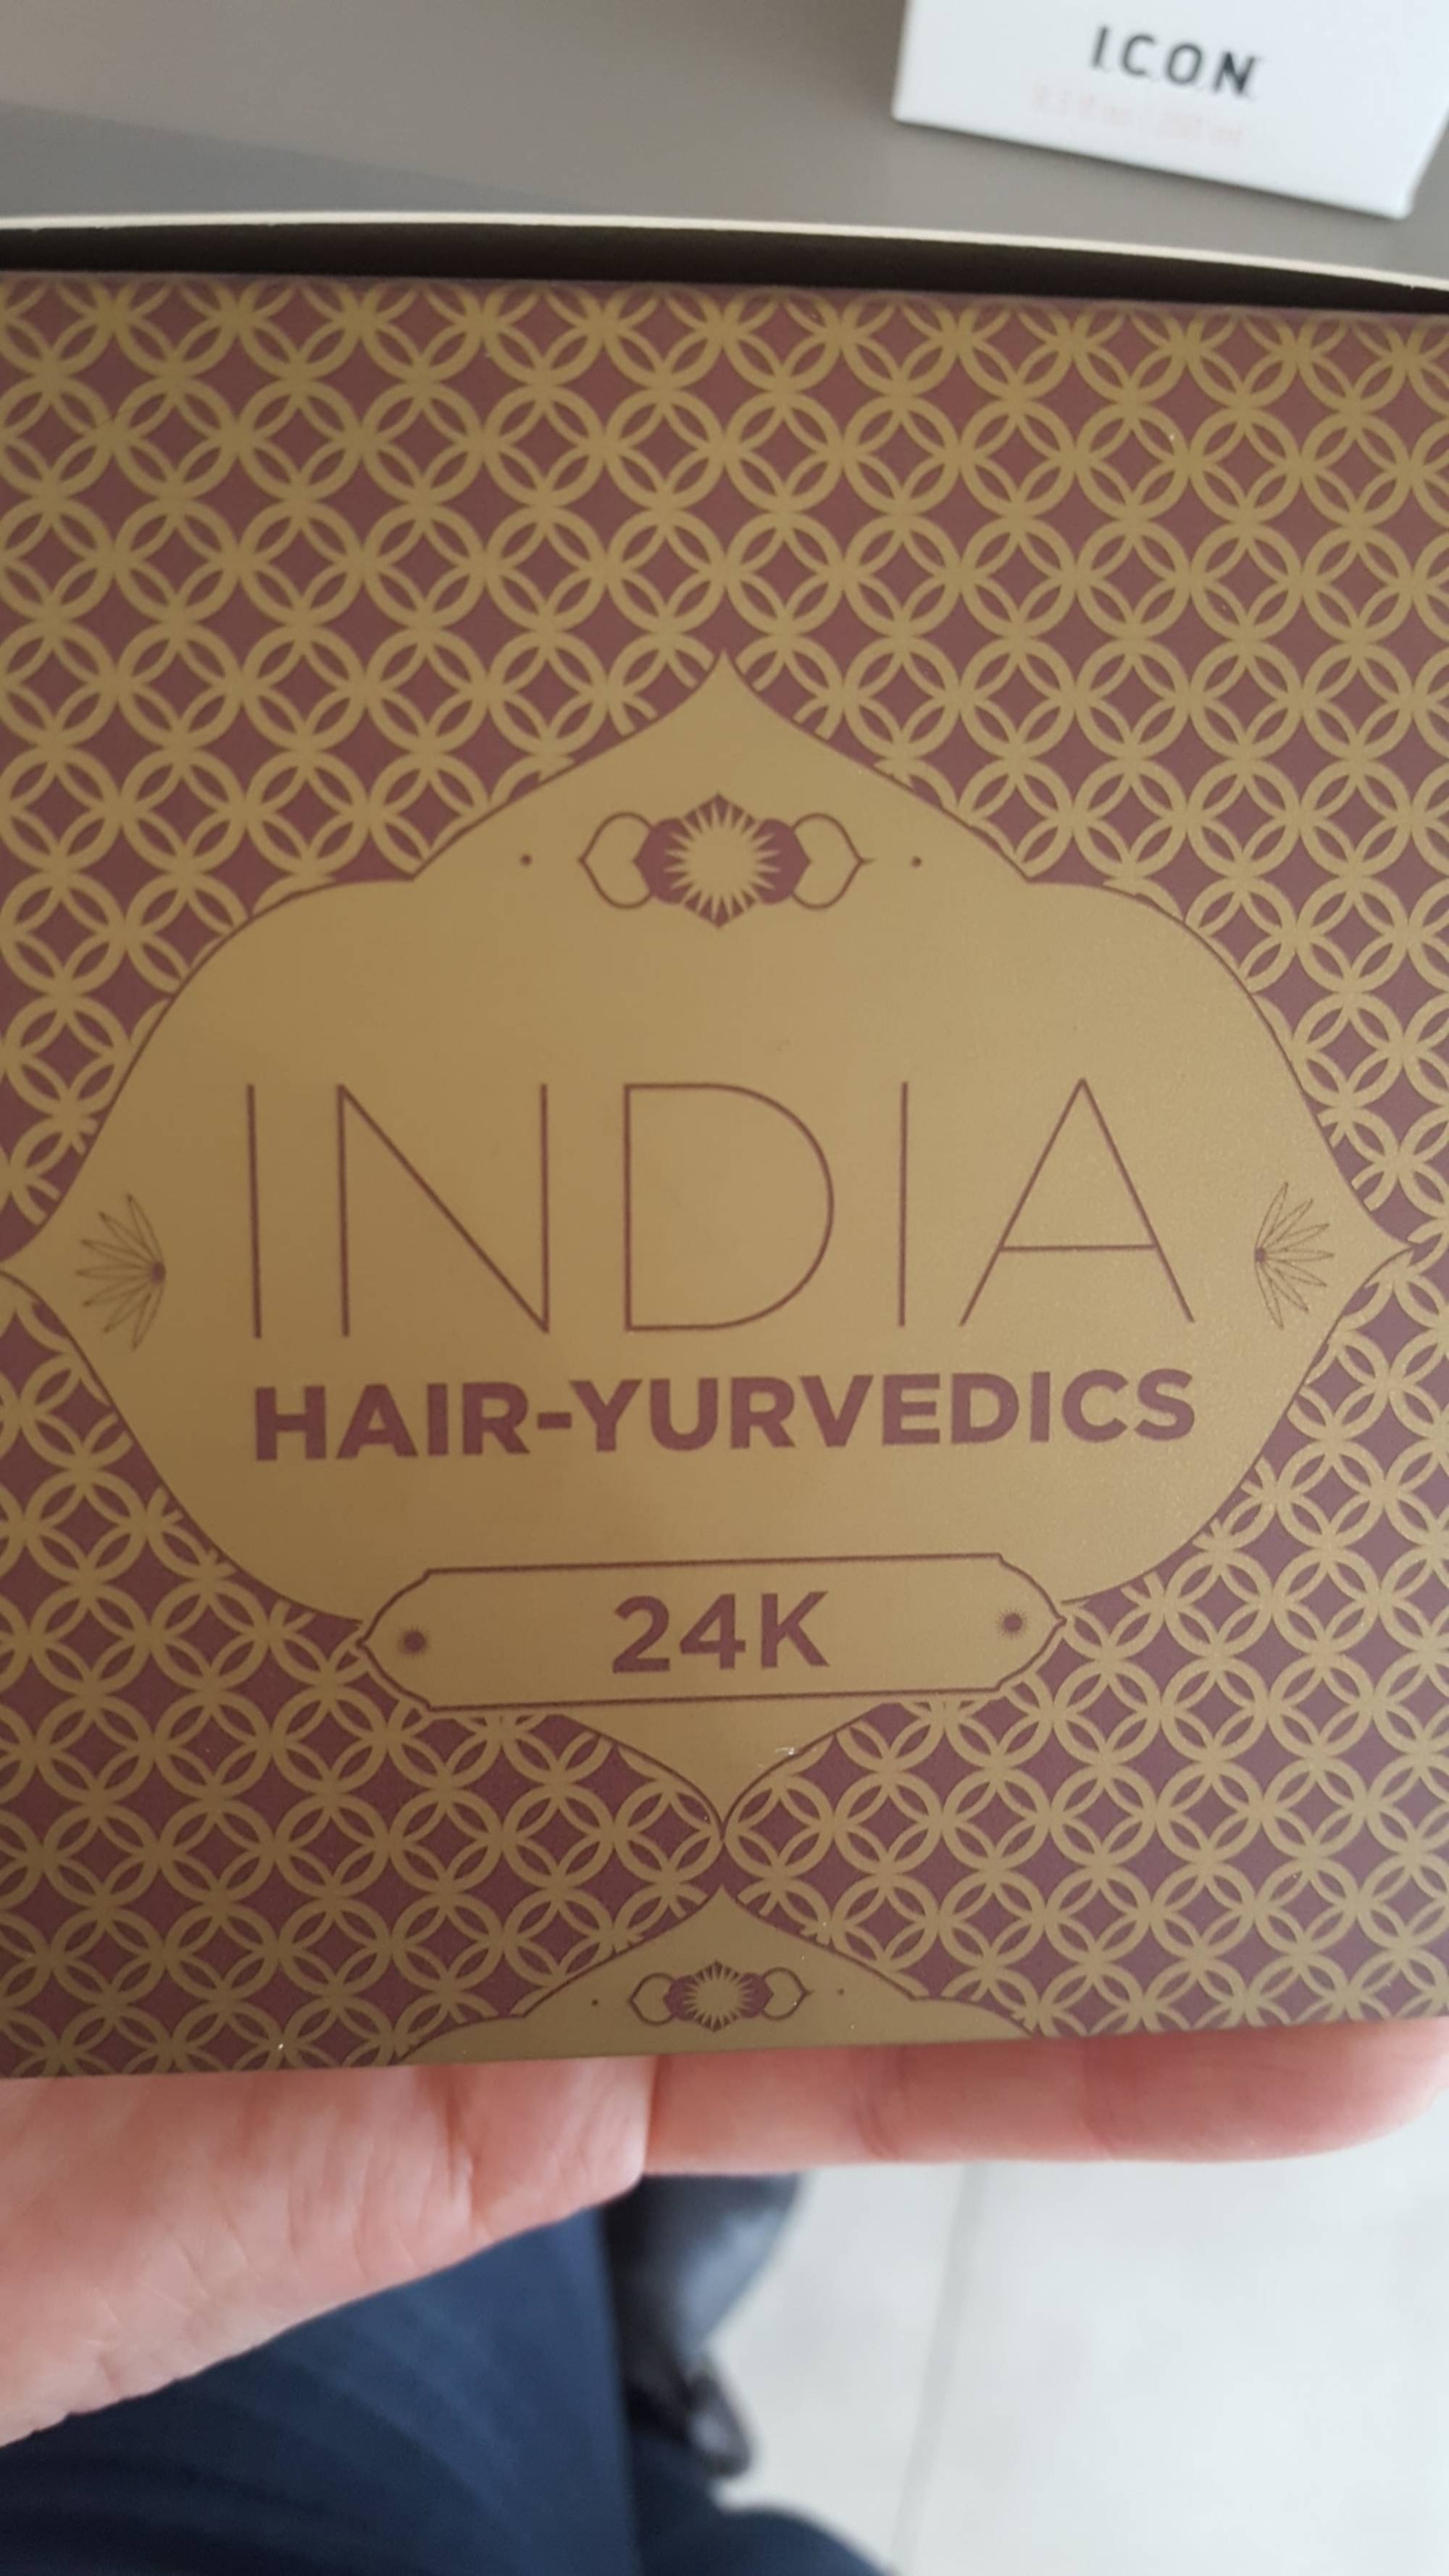 I.C.O.N. - India hair-yurvedics 24K